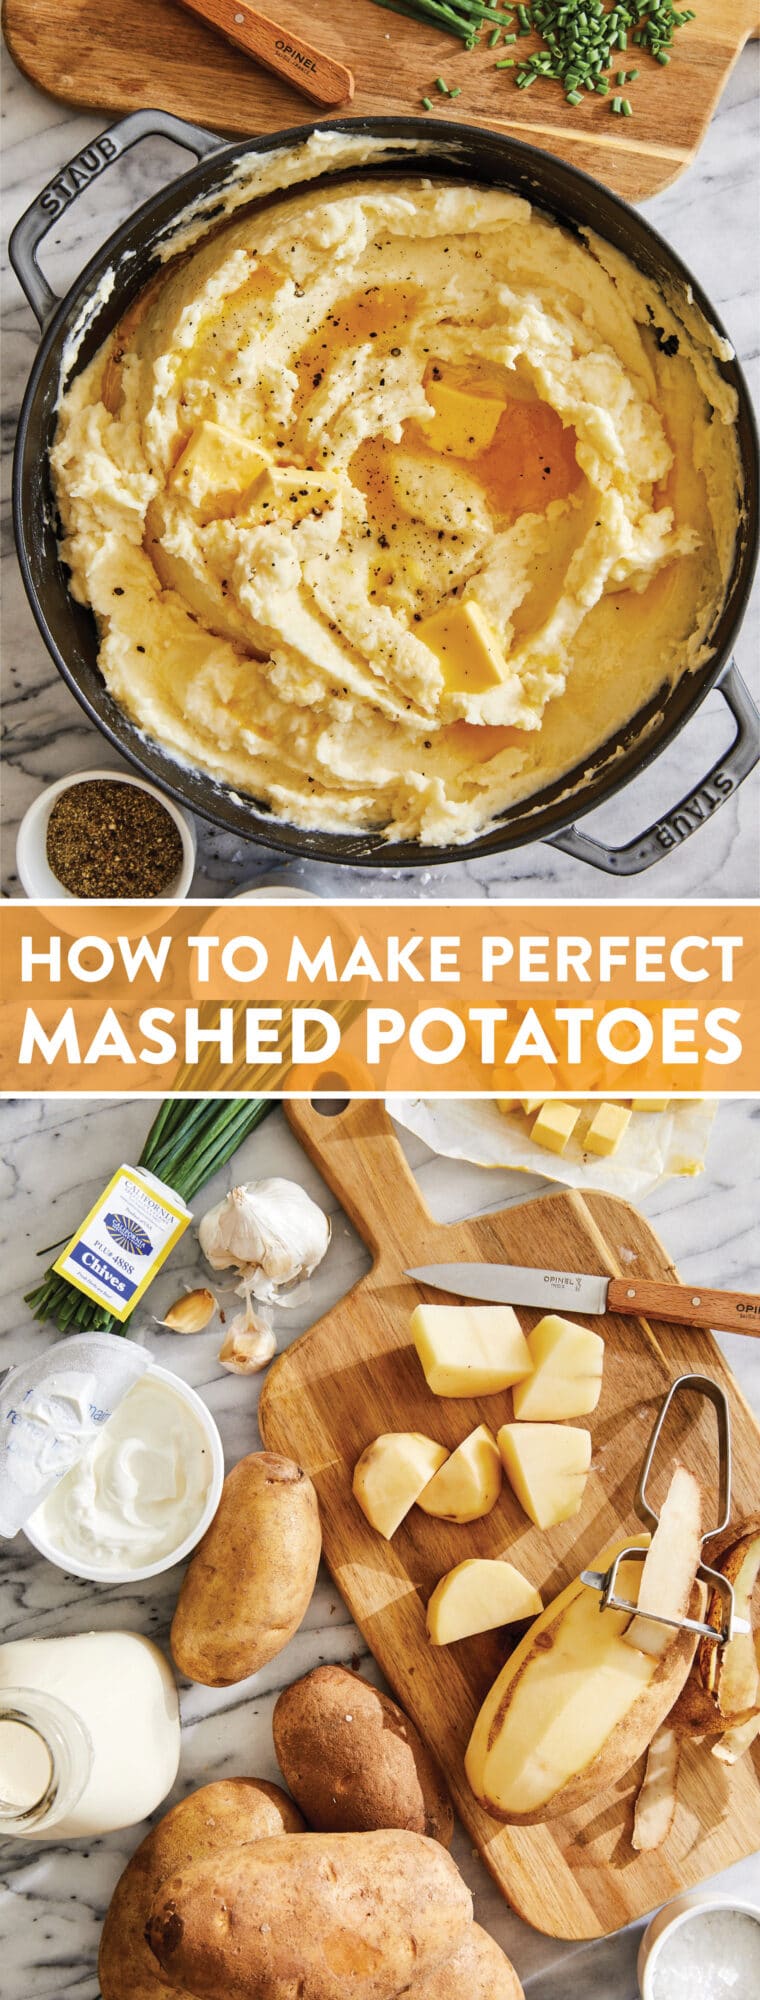 Как сделать идеальное картофельное пюре - готовьте самое лучшее, самое идеальное (без комков) картофельное пюре КАЖДЫЙ РАЗ! Такой маслянистый, сливочный + пушистый!